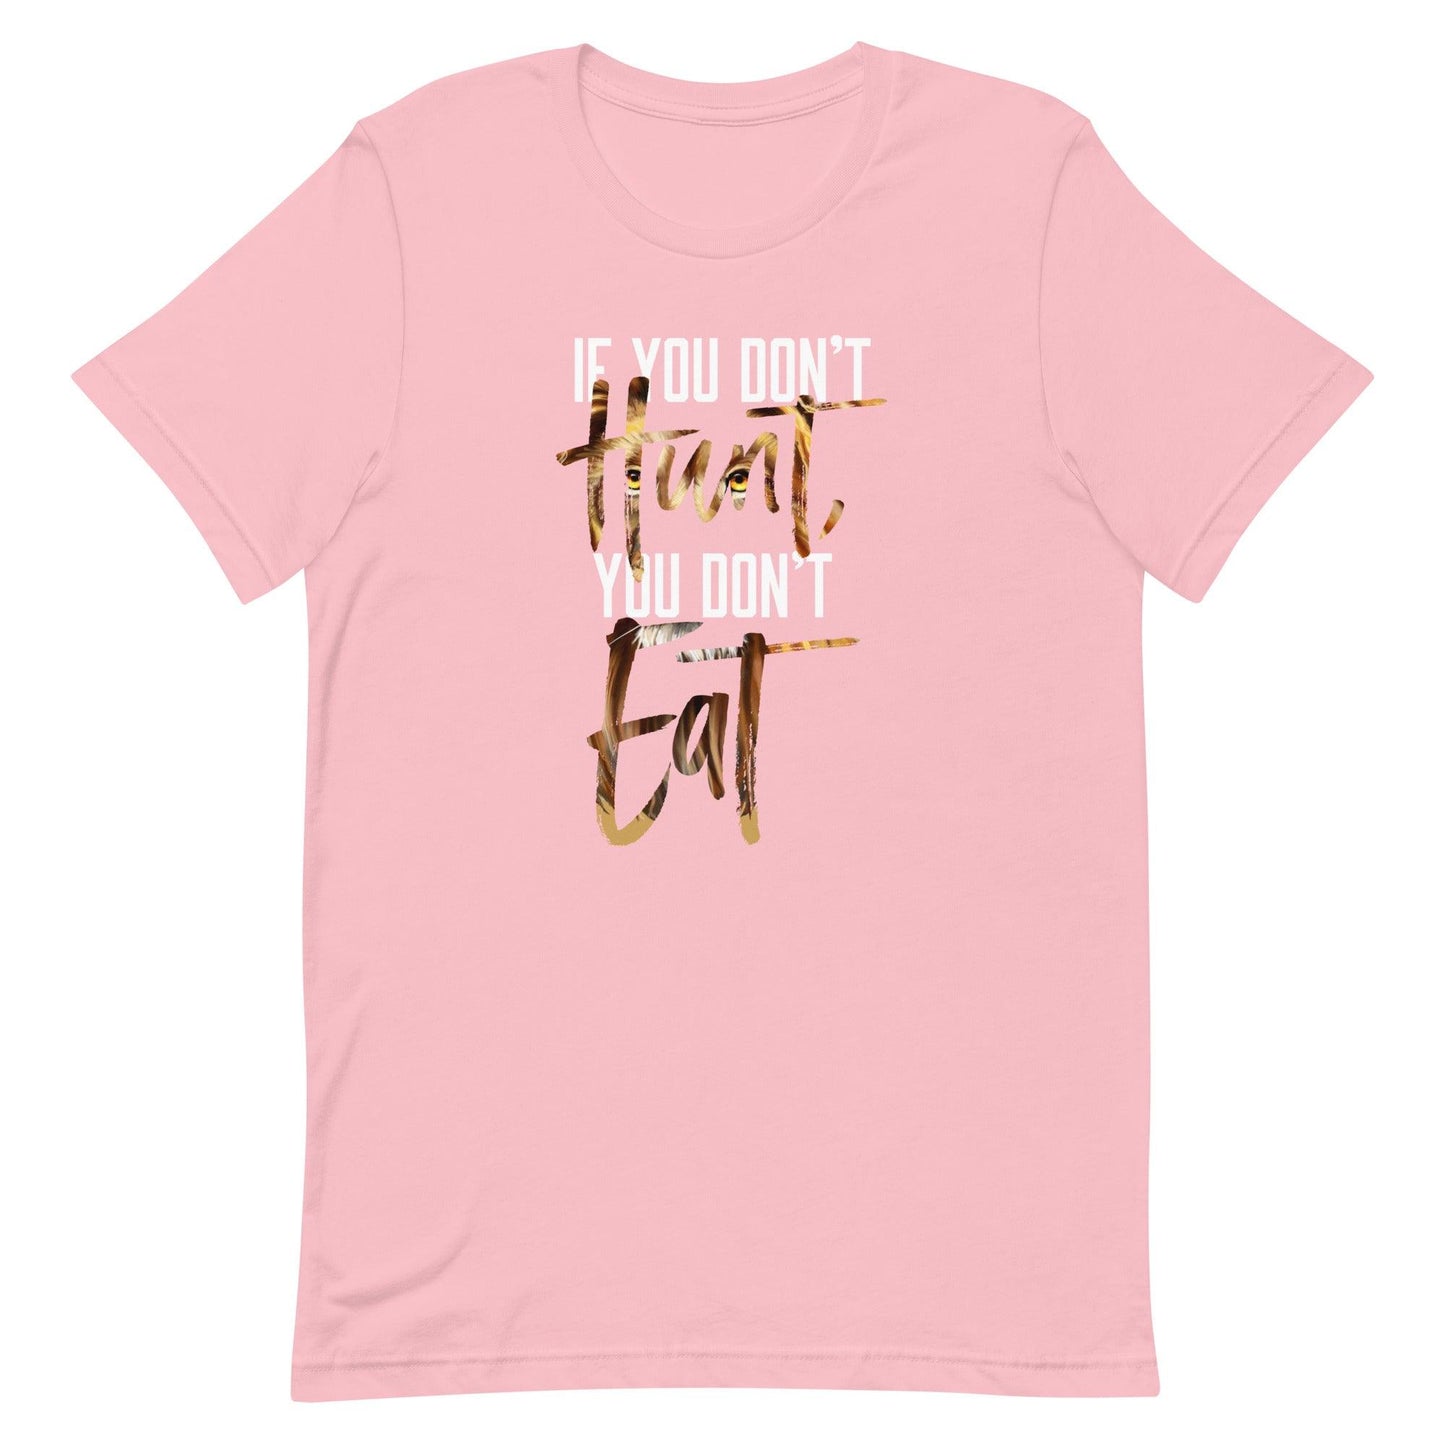 DJ Swearinger "Hunt" t-shirt - Fan Arch